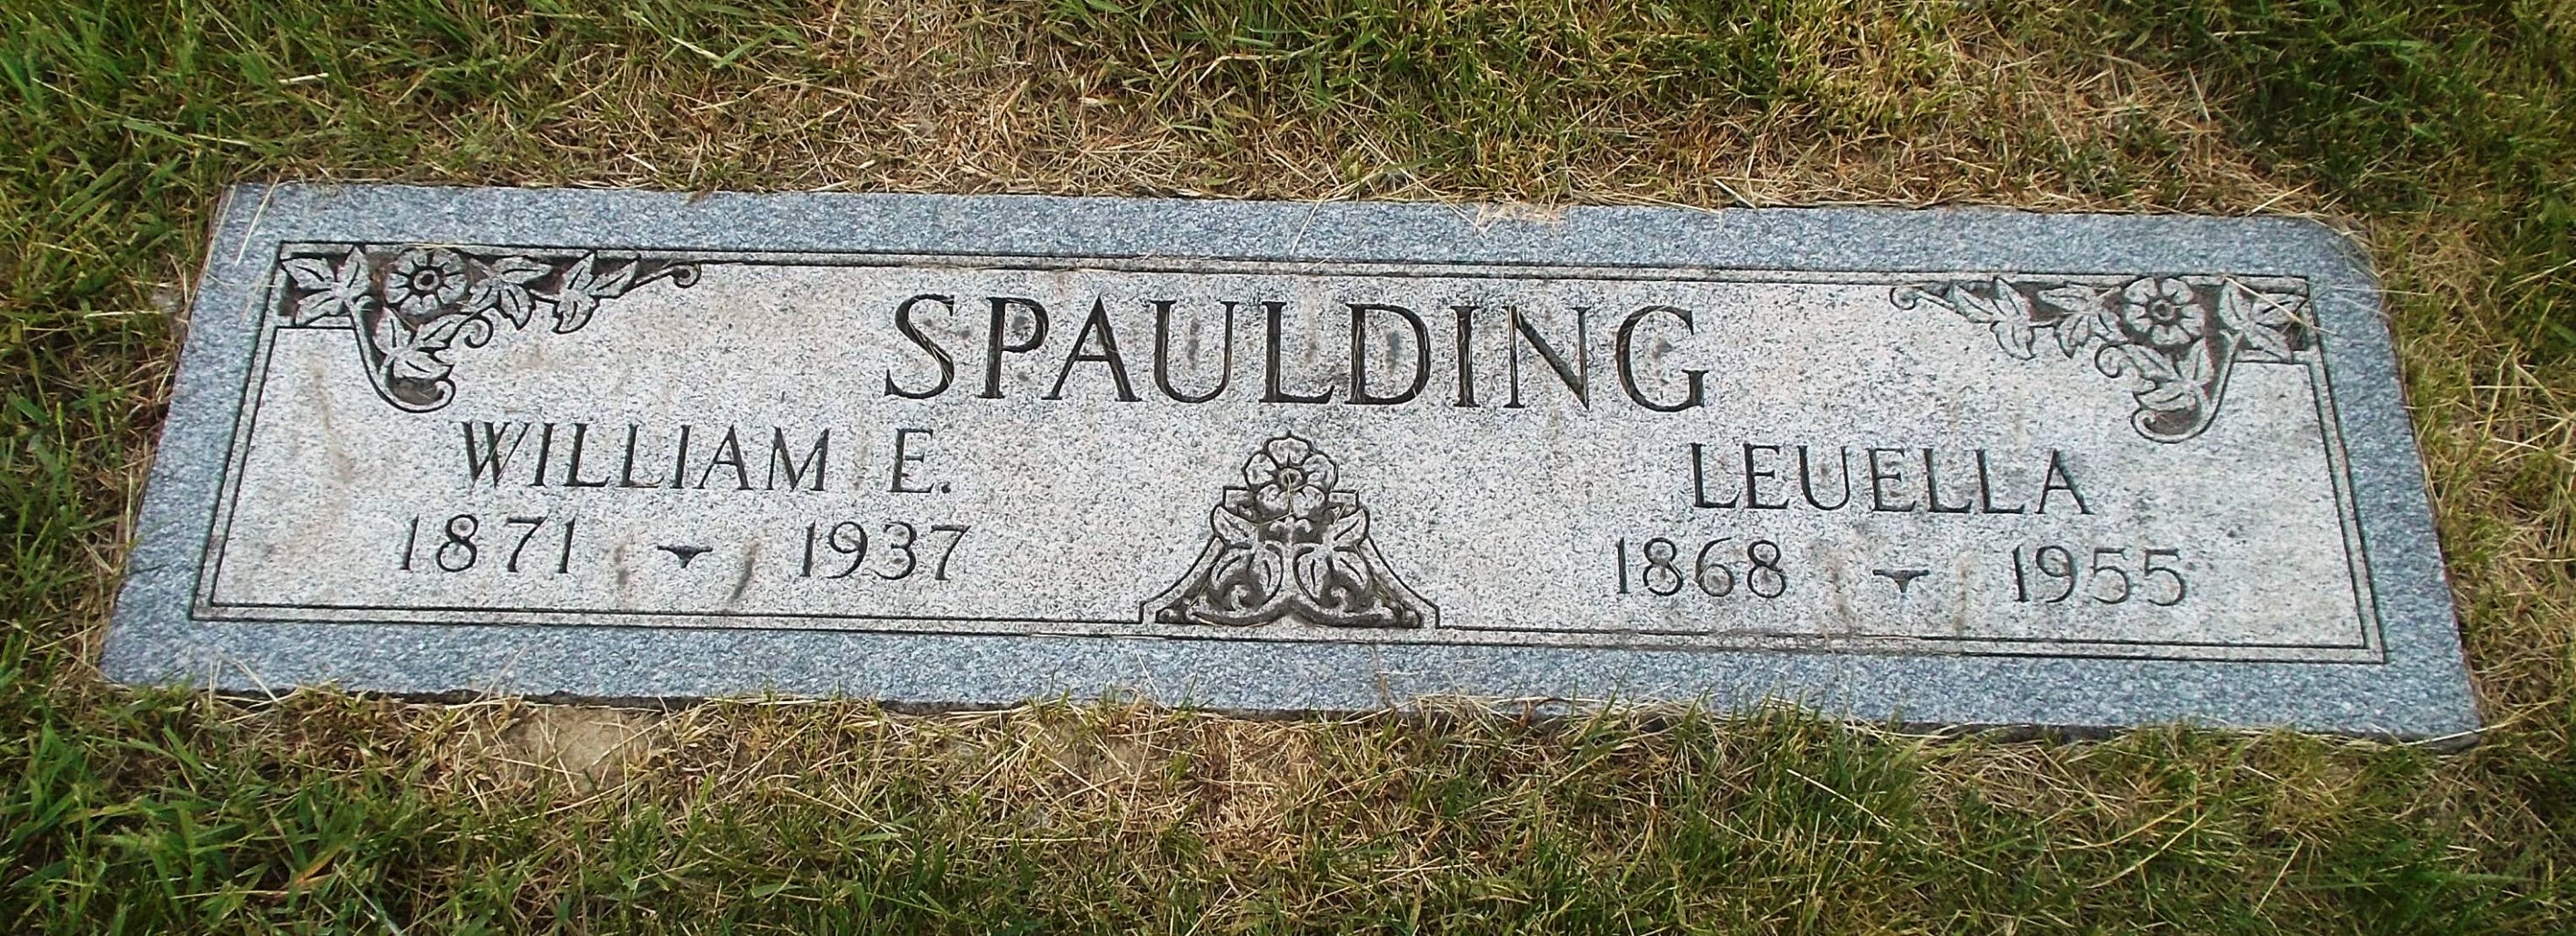 William E Spaulding